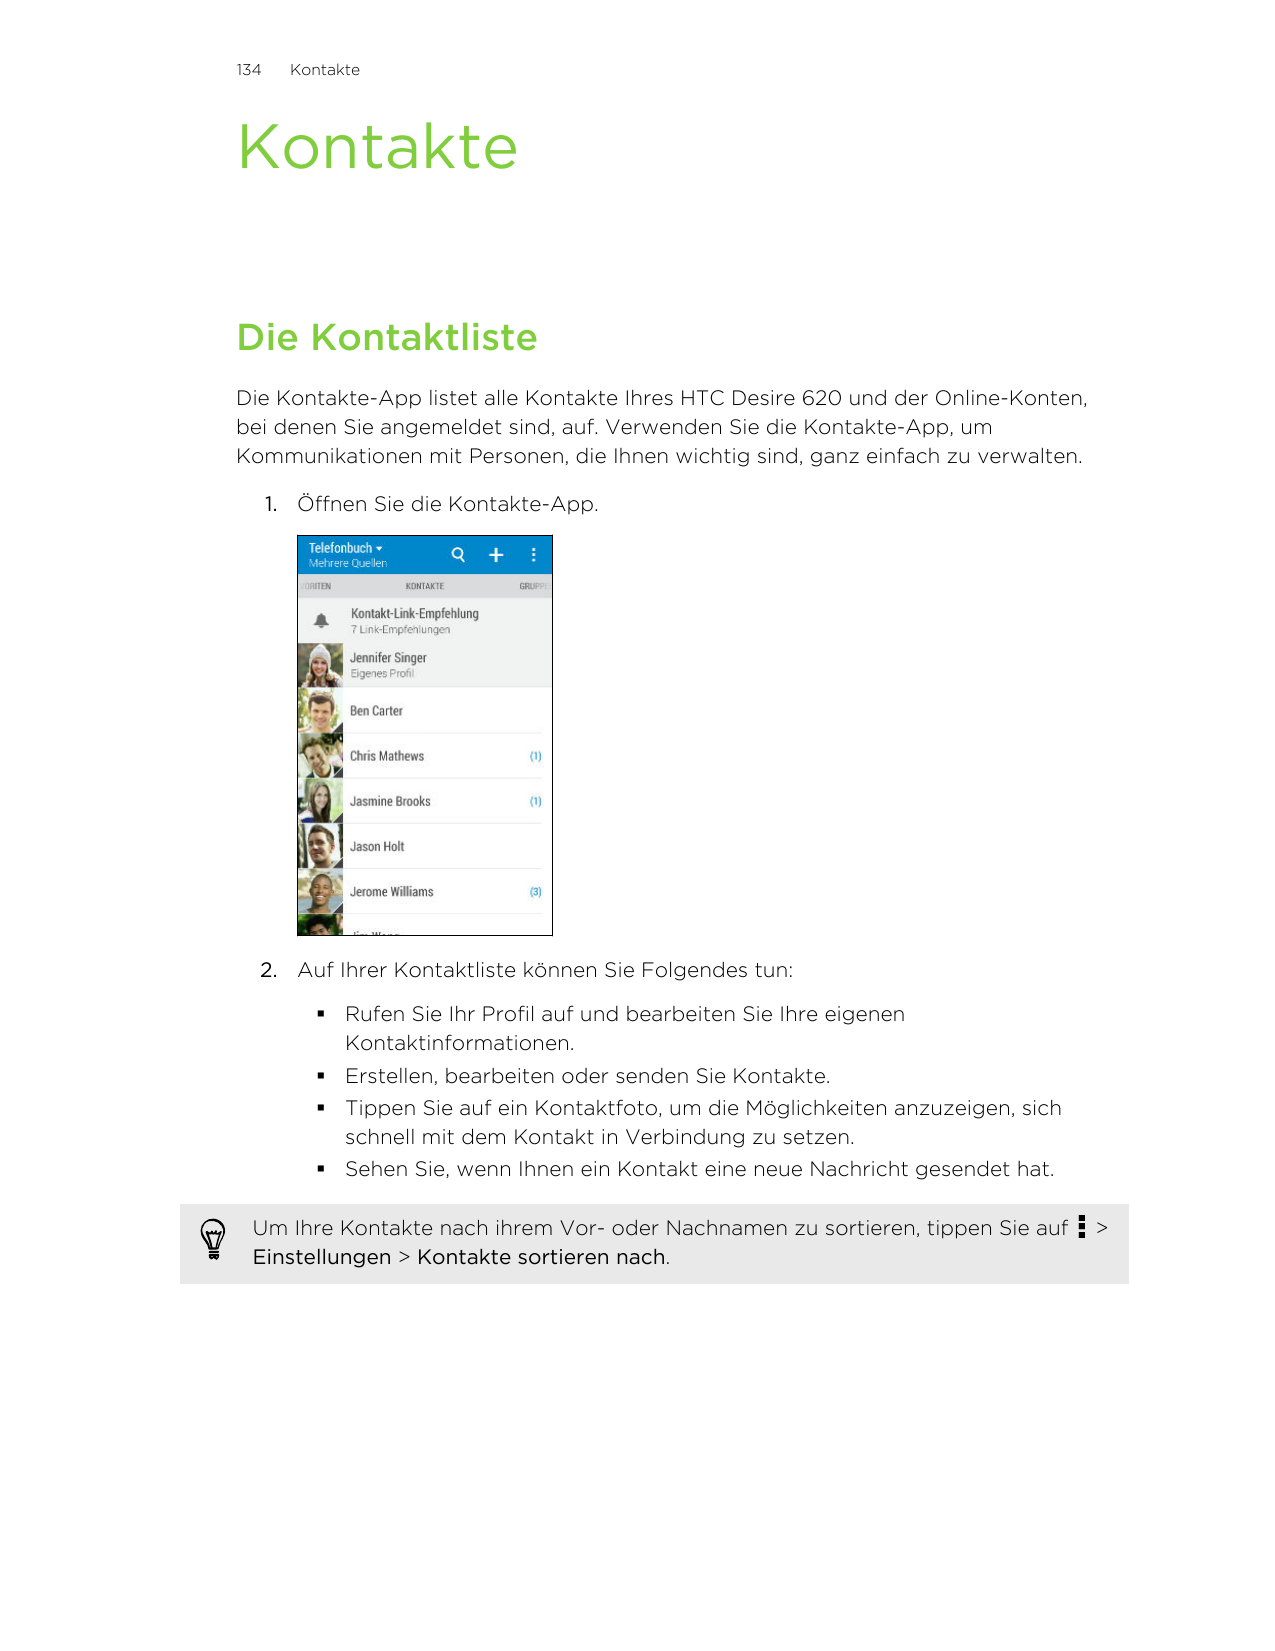 134KontakteKontakteDie KontaktlisteDie Kontakte-App listet alle Kontakte Ihres HTC Desire 620 und der Online-Konten,bei denen Si